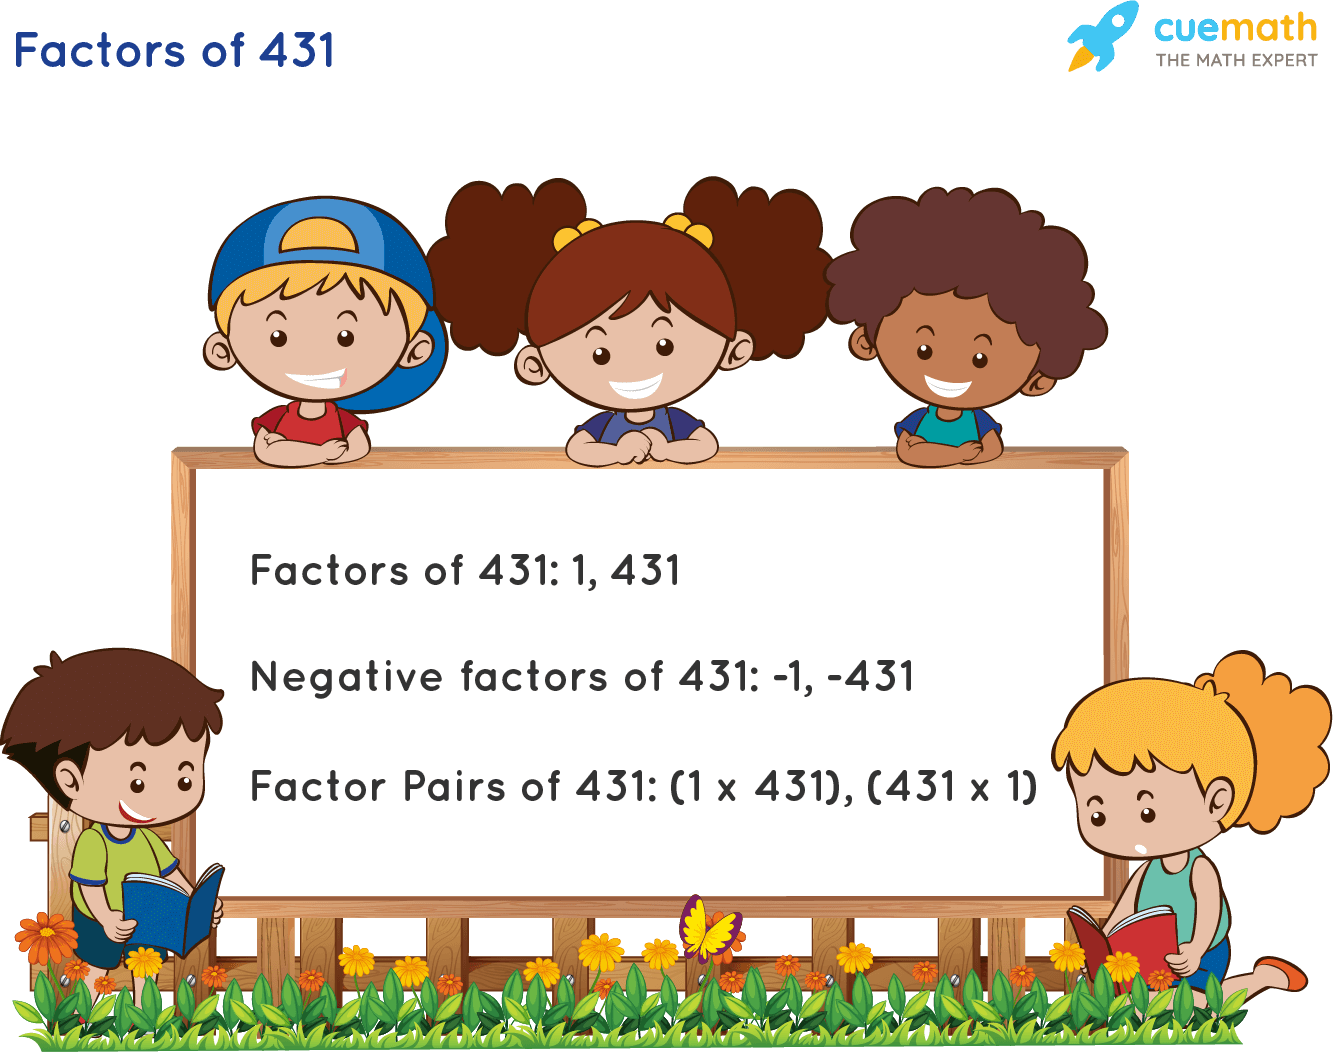 Factors of 431